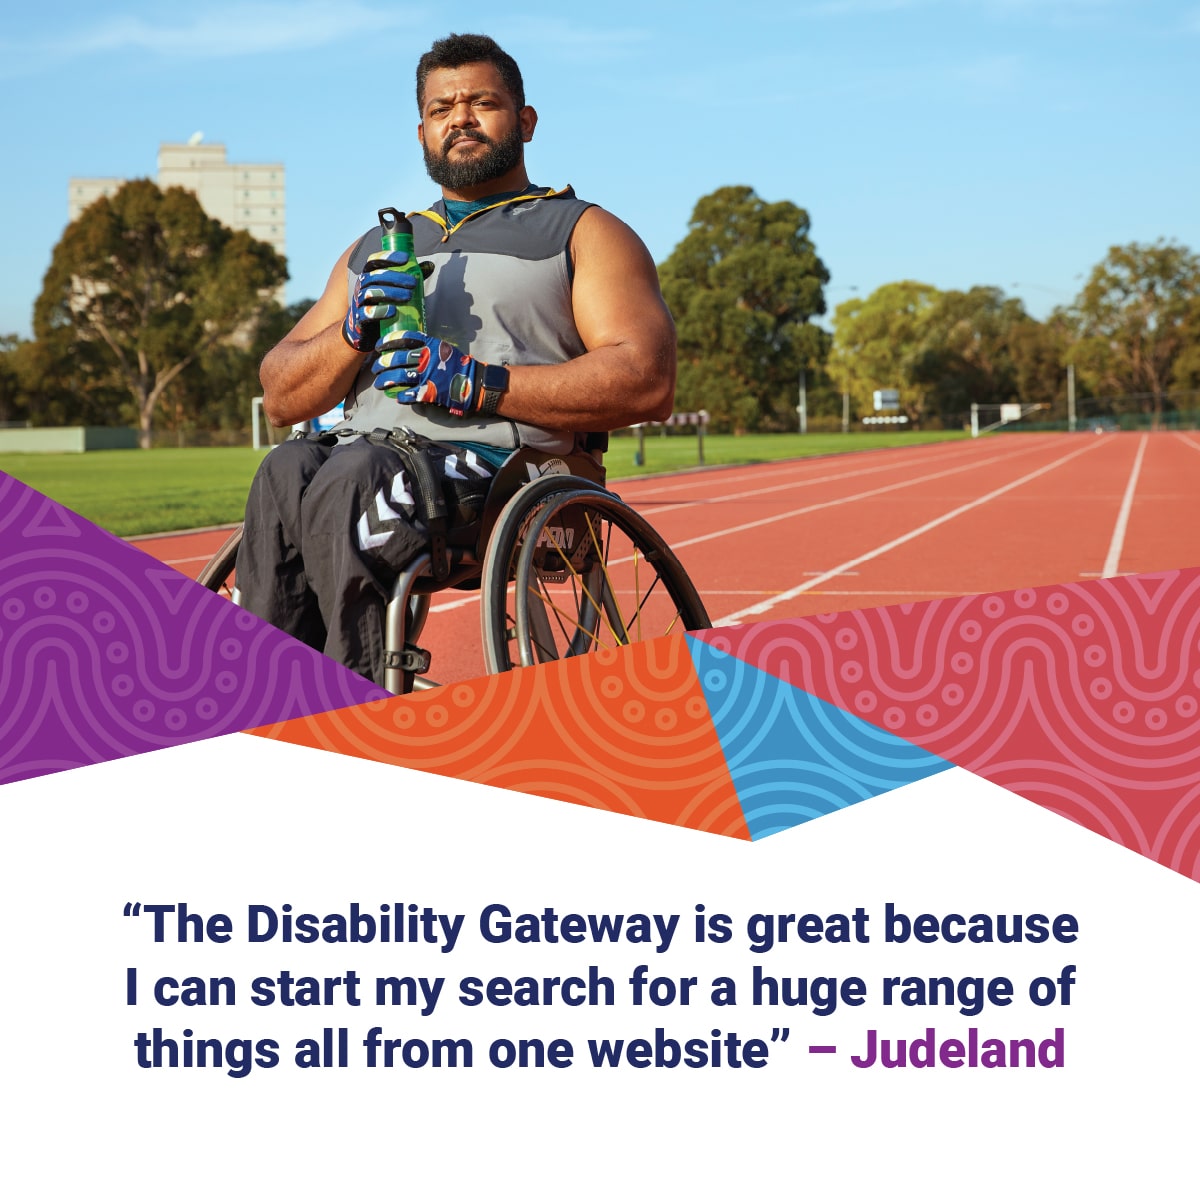 National Disability Gateway Judeland